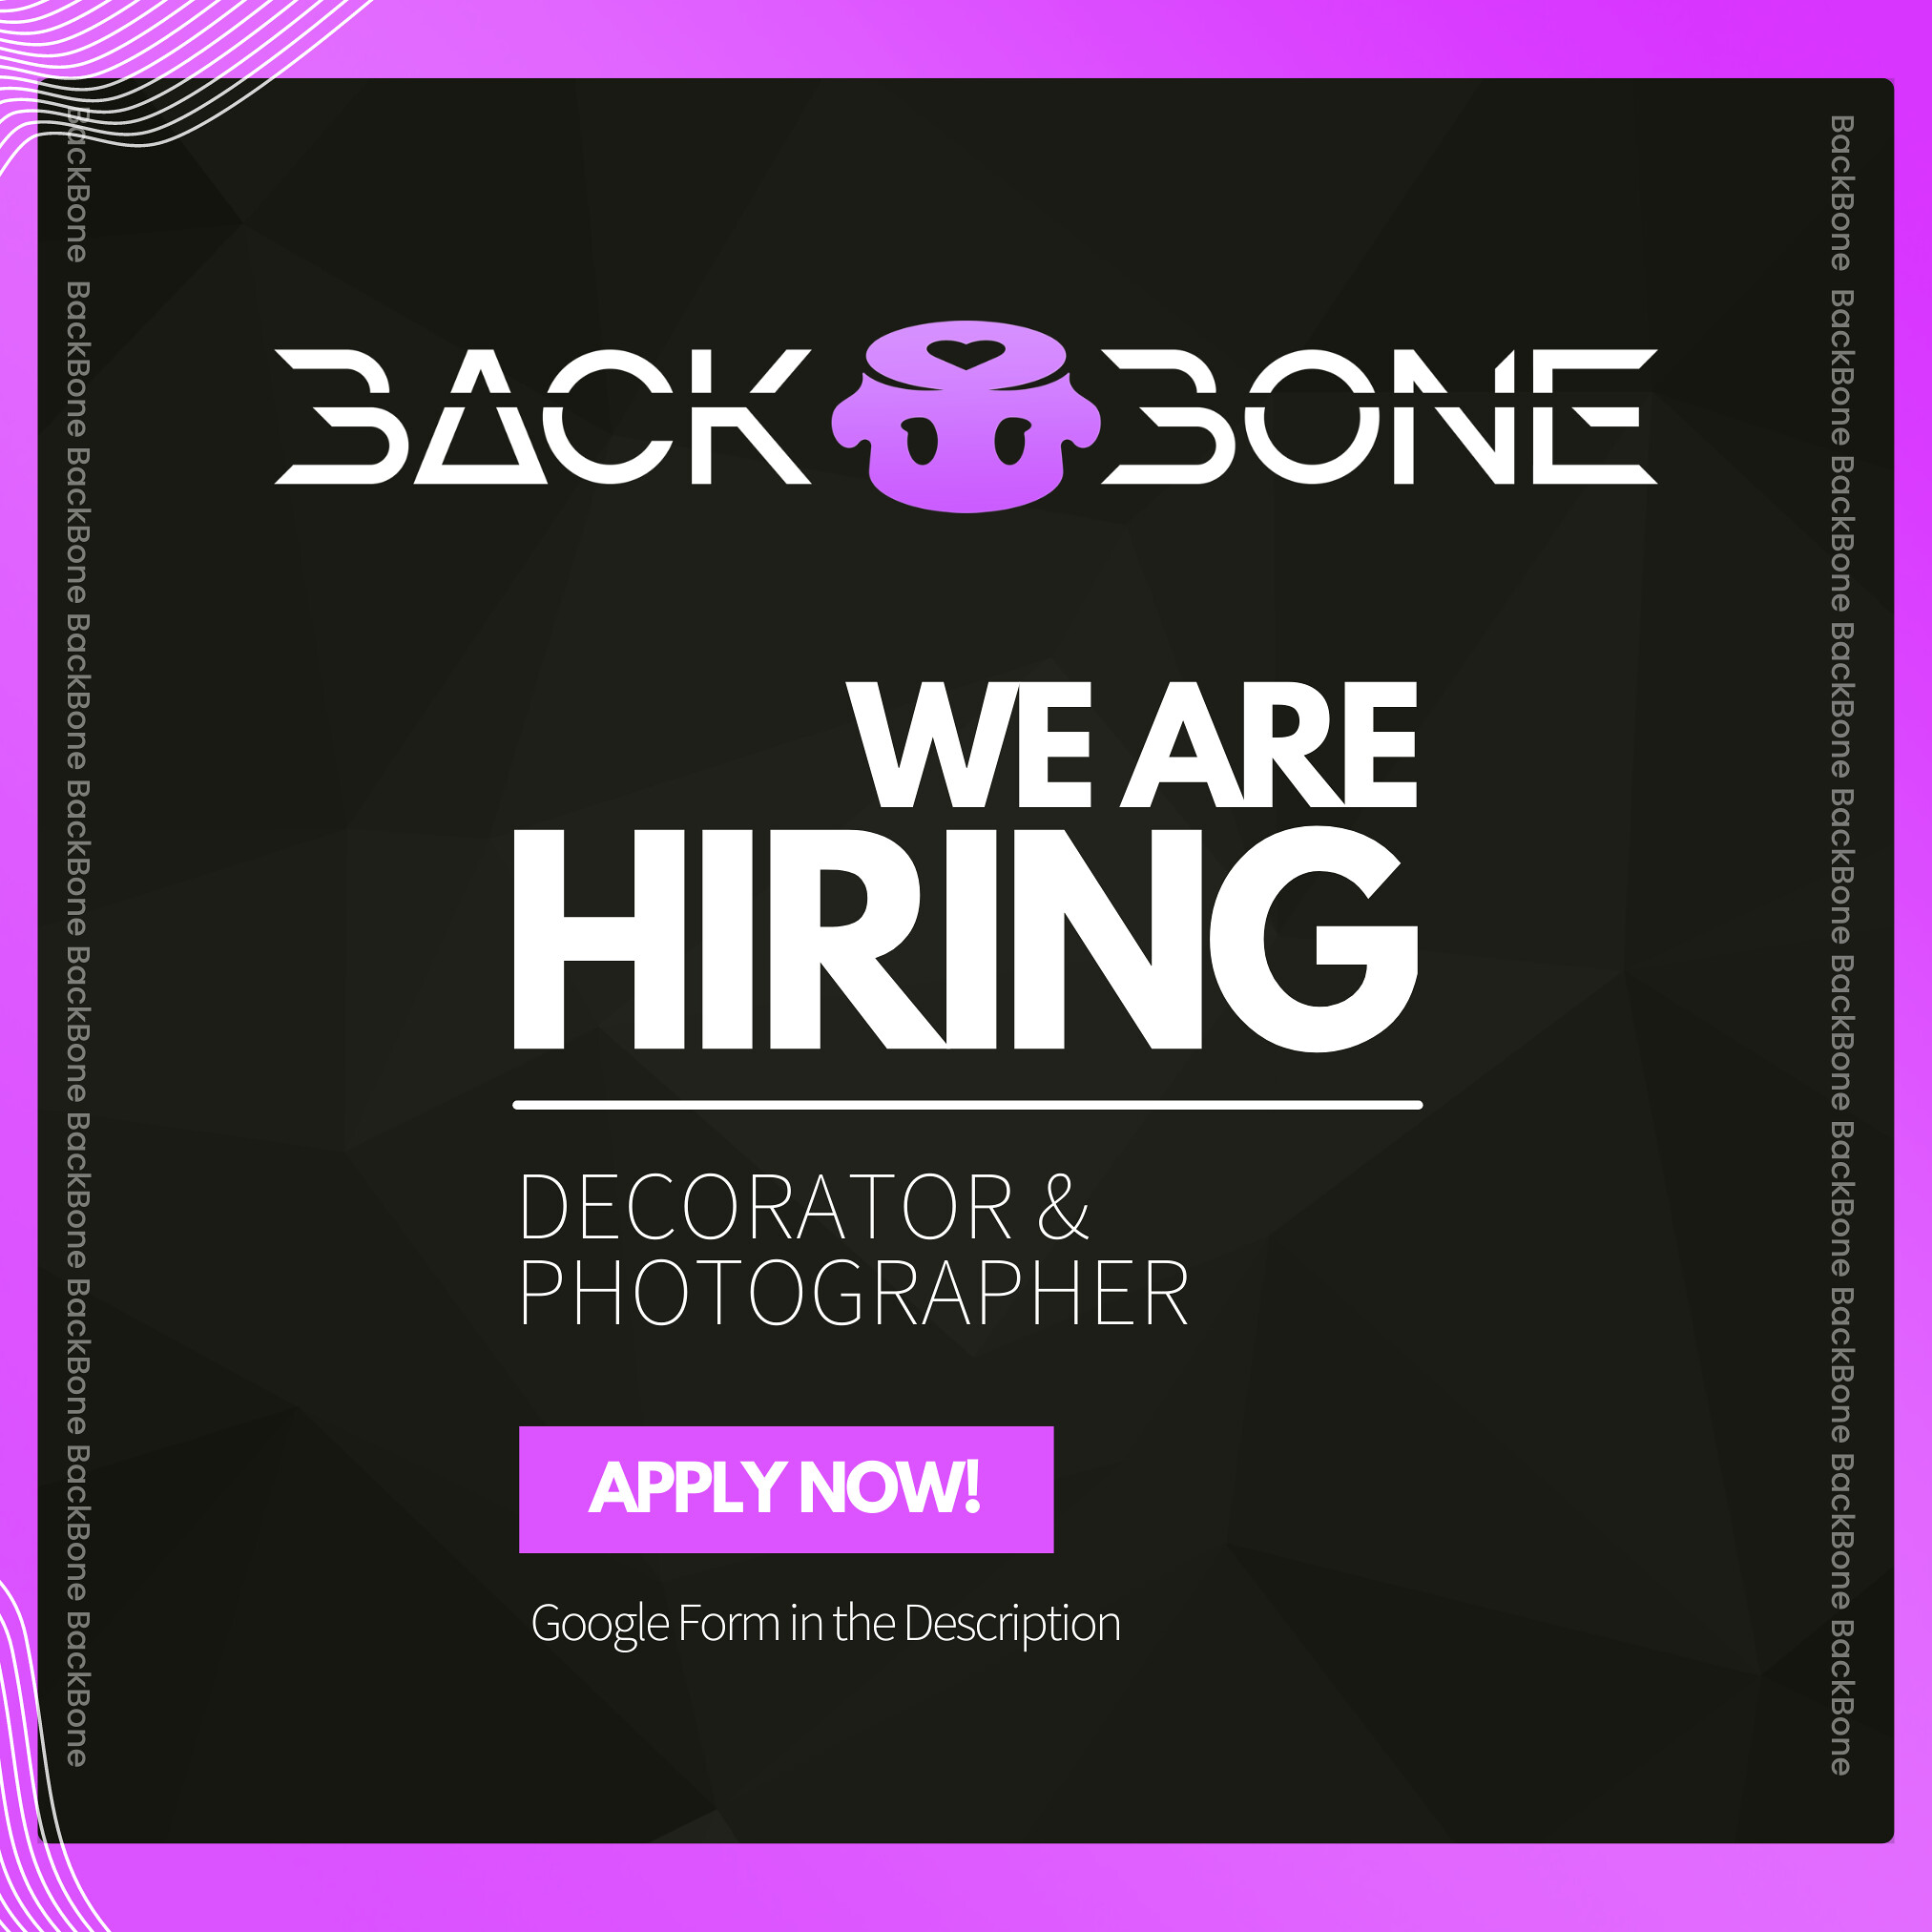 Backbone – Hiring Decorator / Photographer